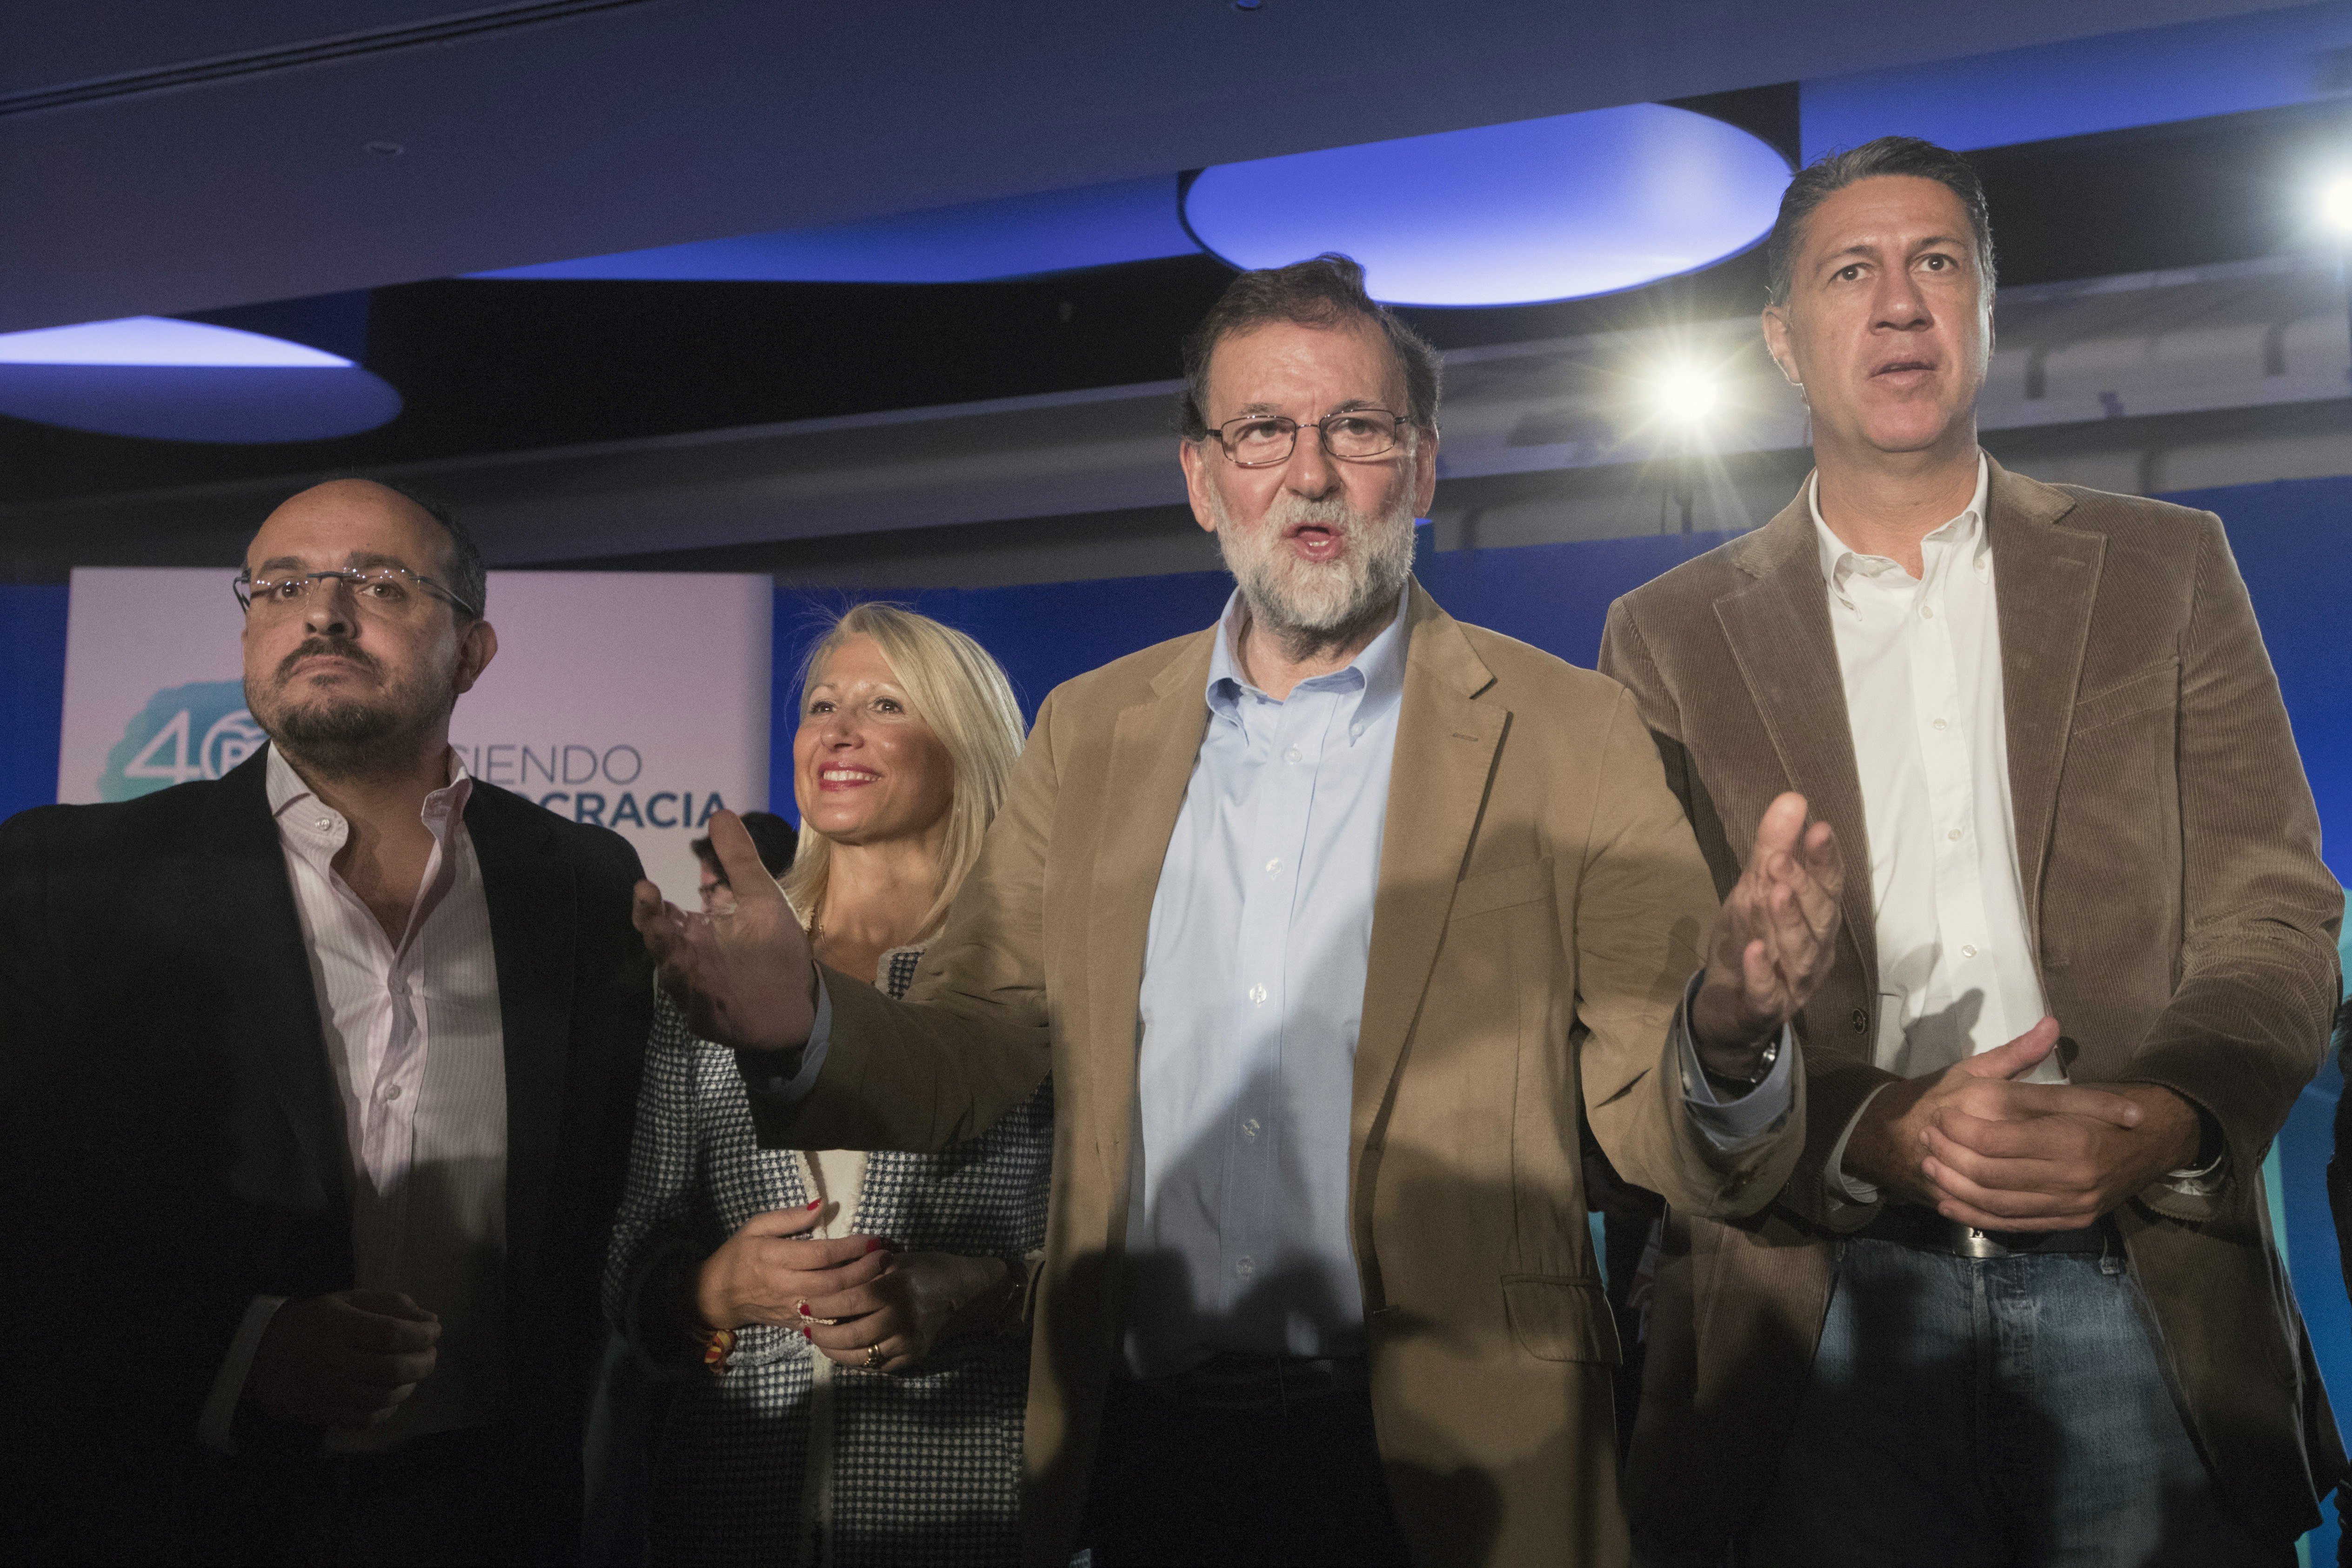 Rajoy ha d'acceptar un debat amb Puigdemont?